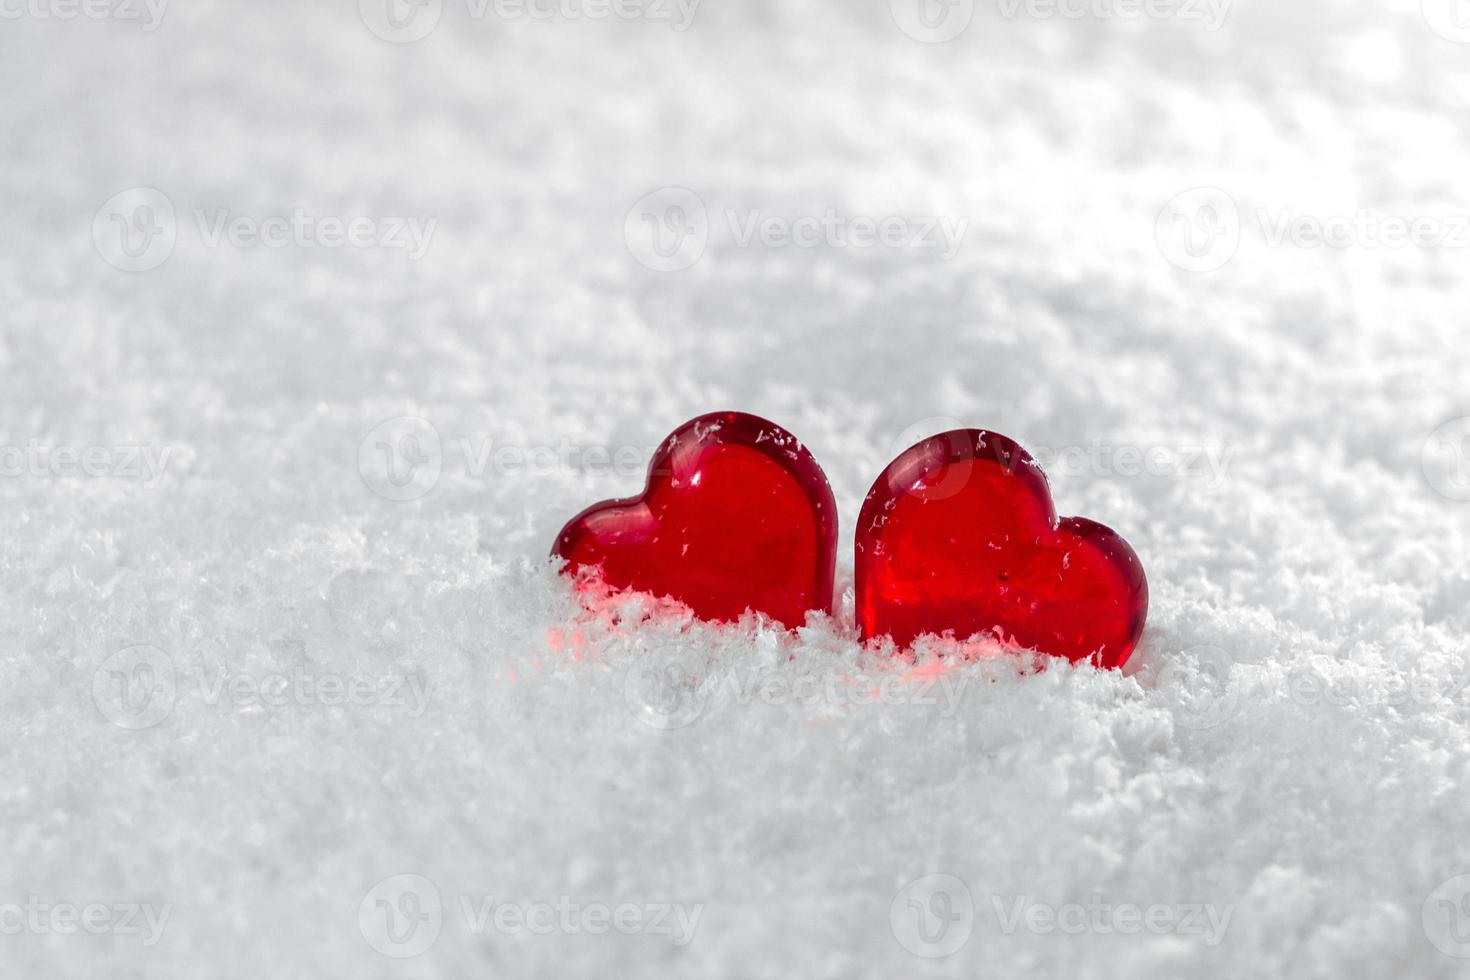 dos corazones rojos yacen en la nieve blanca y esponjosa en invierno símbolo del amor día de san valentín foto